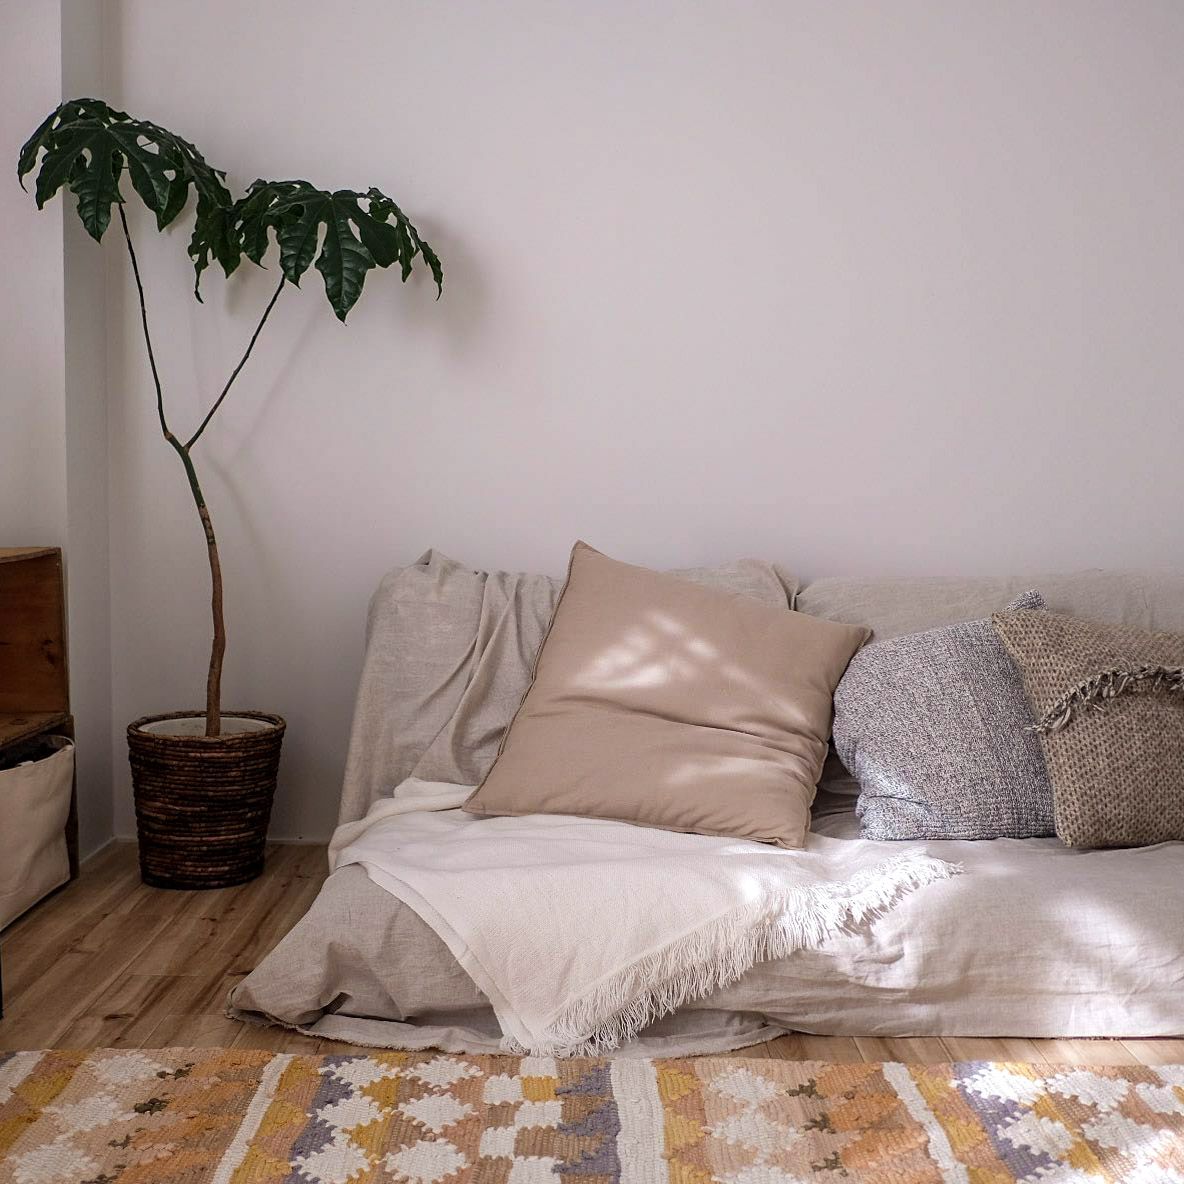 ソファにかける布やクッションカバーは、いつでも気軽に変えられるもの。好きなデザインのものを集めて、季節や気分に合わせてつけかえると、室内でも四季を感じられていいですね。